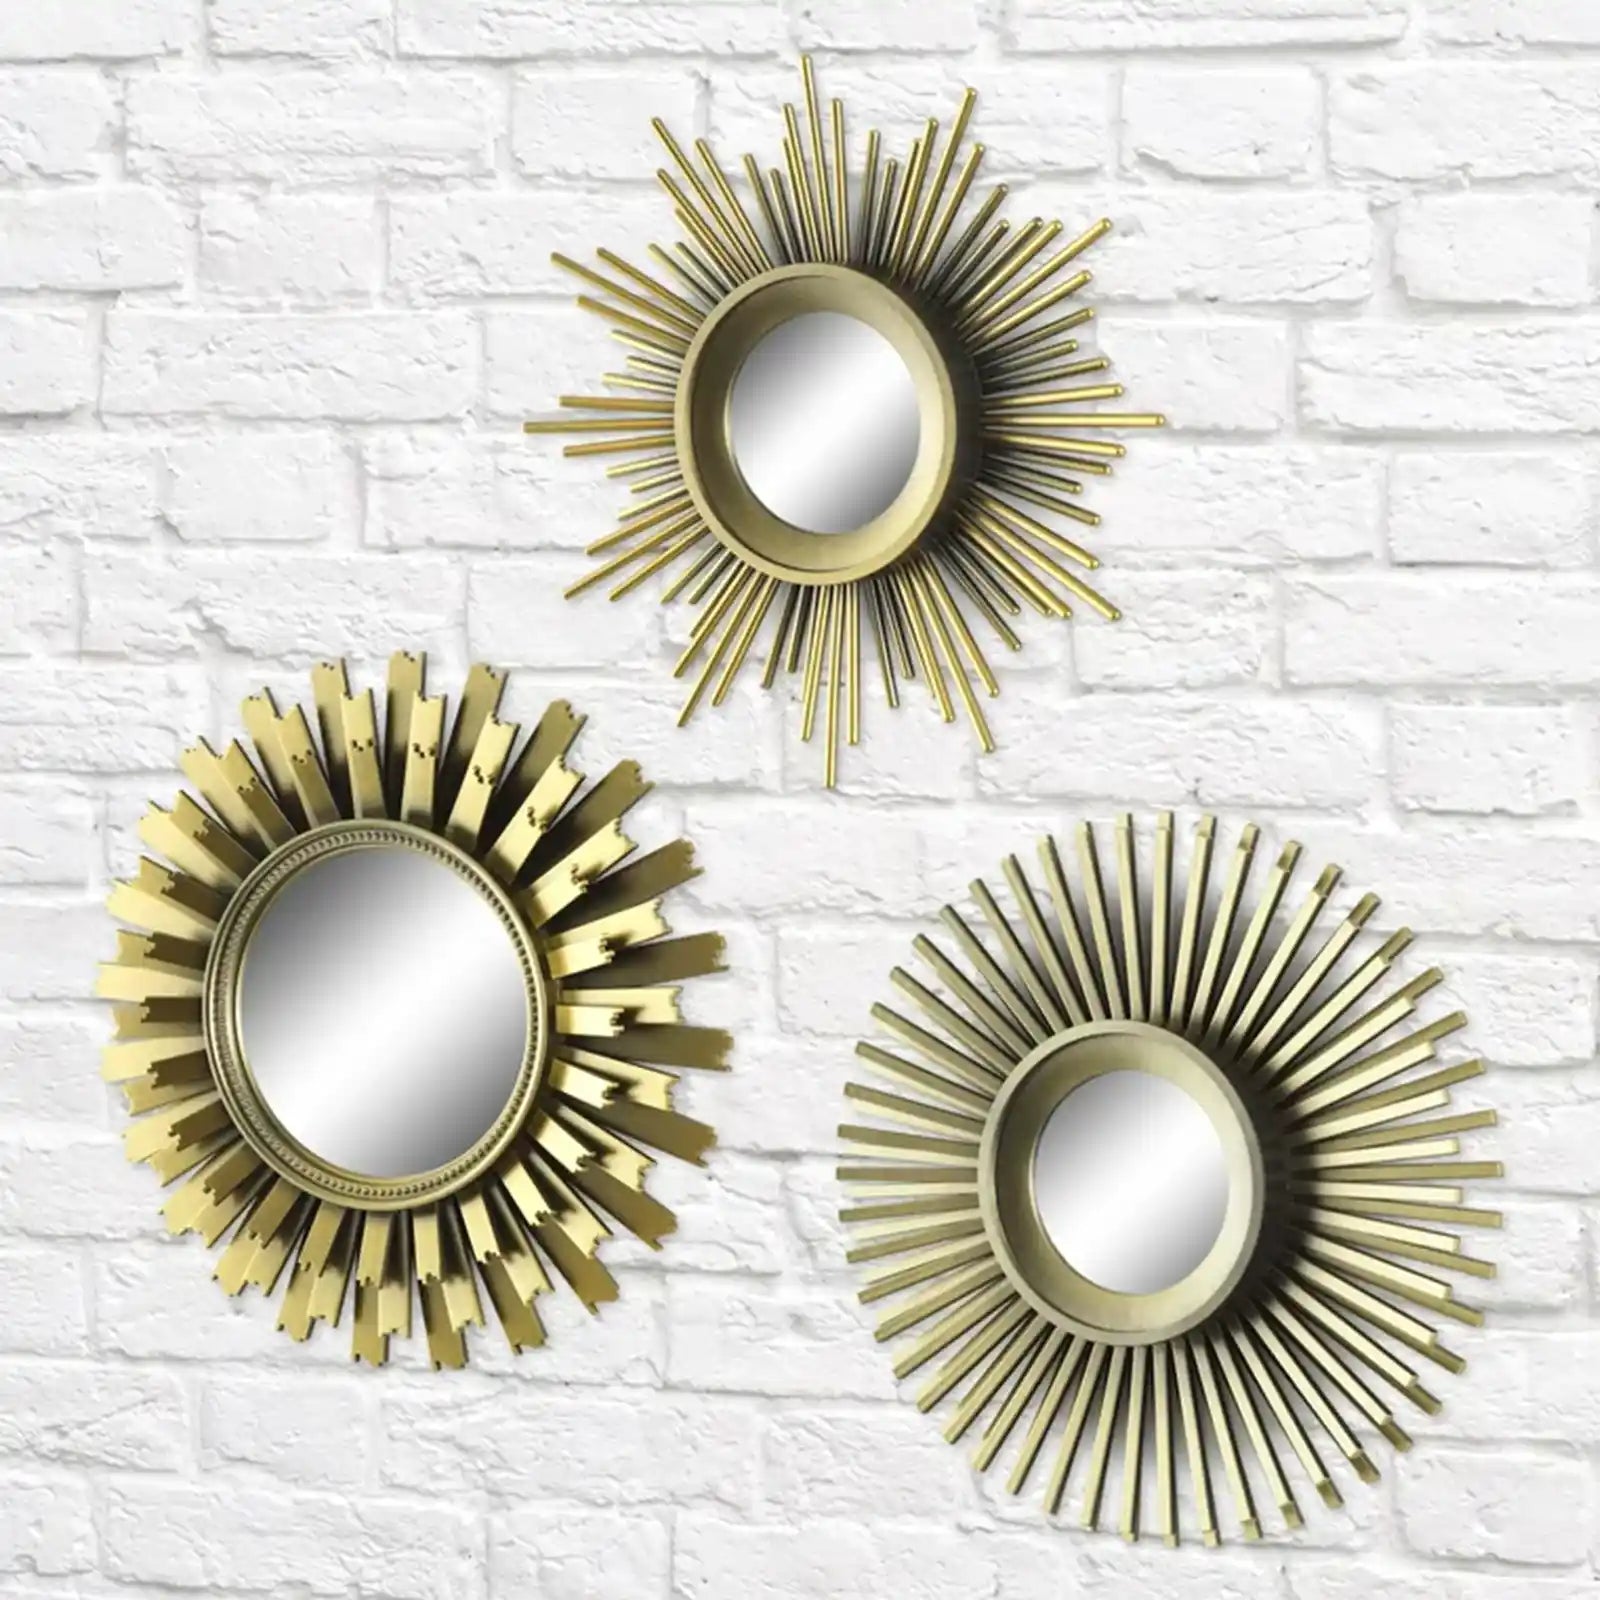 3-Piece Round Sunburst Mirror Set in Gold Finish